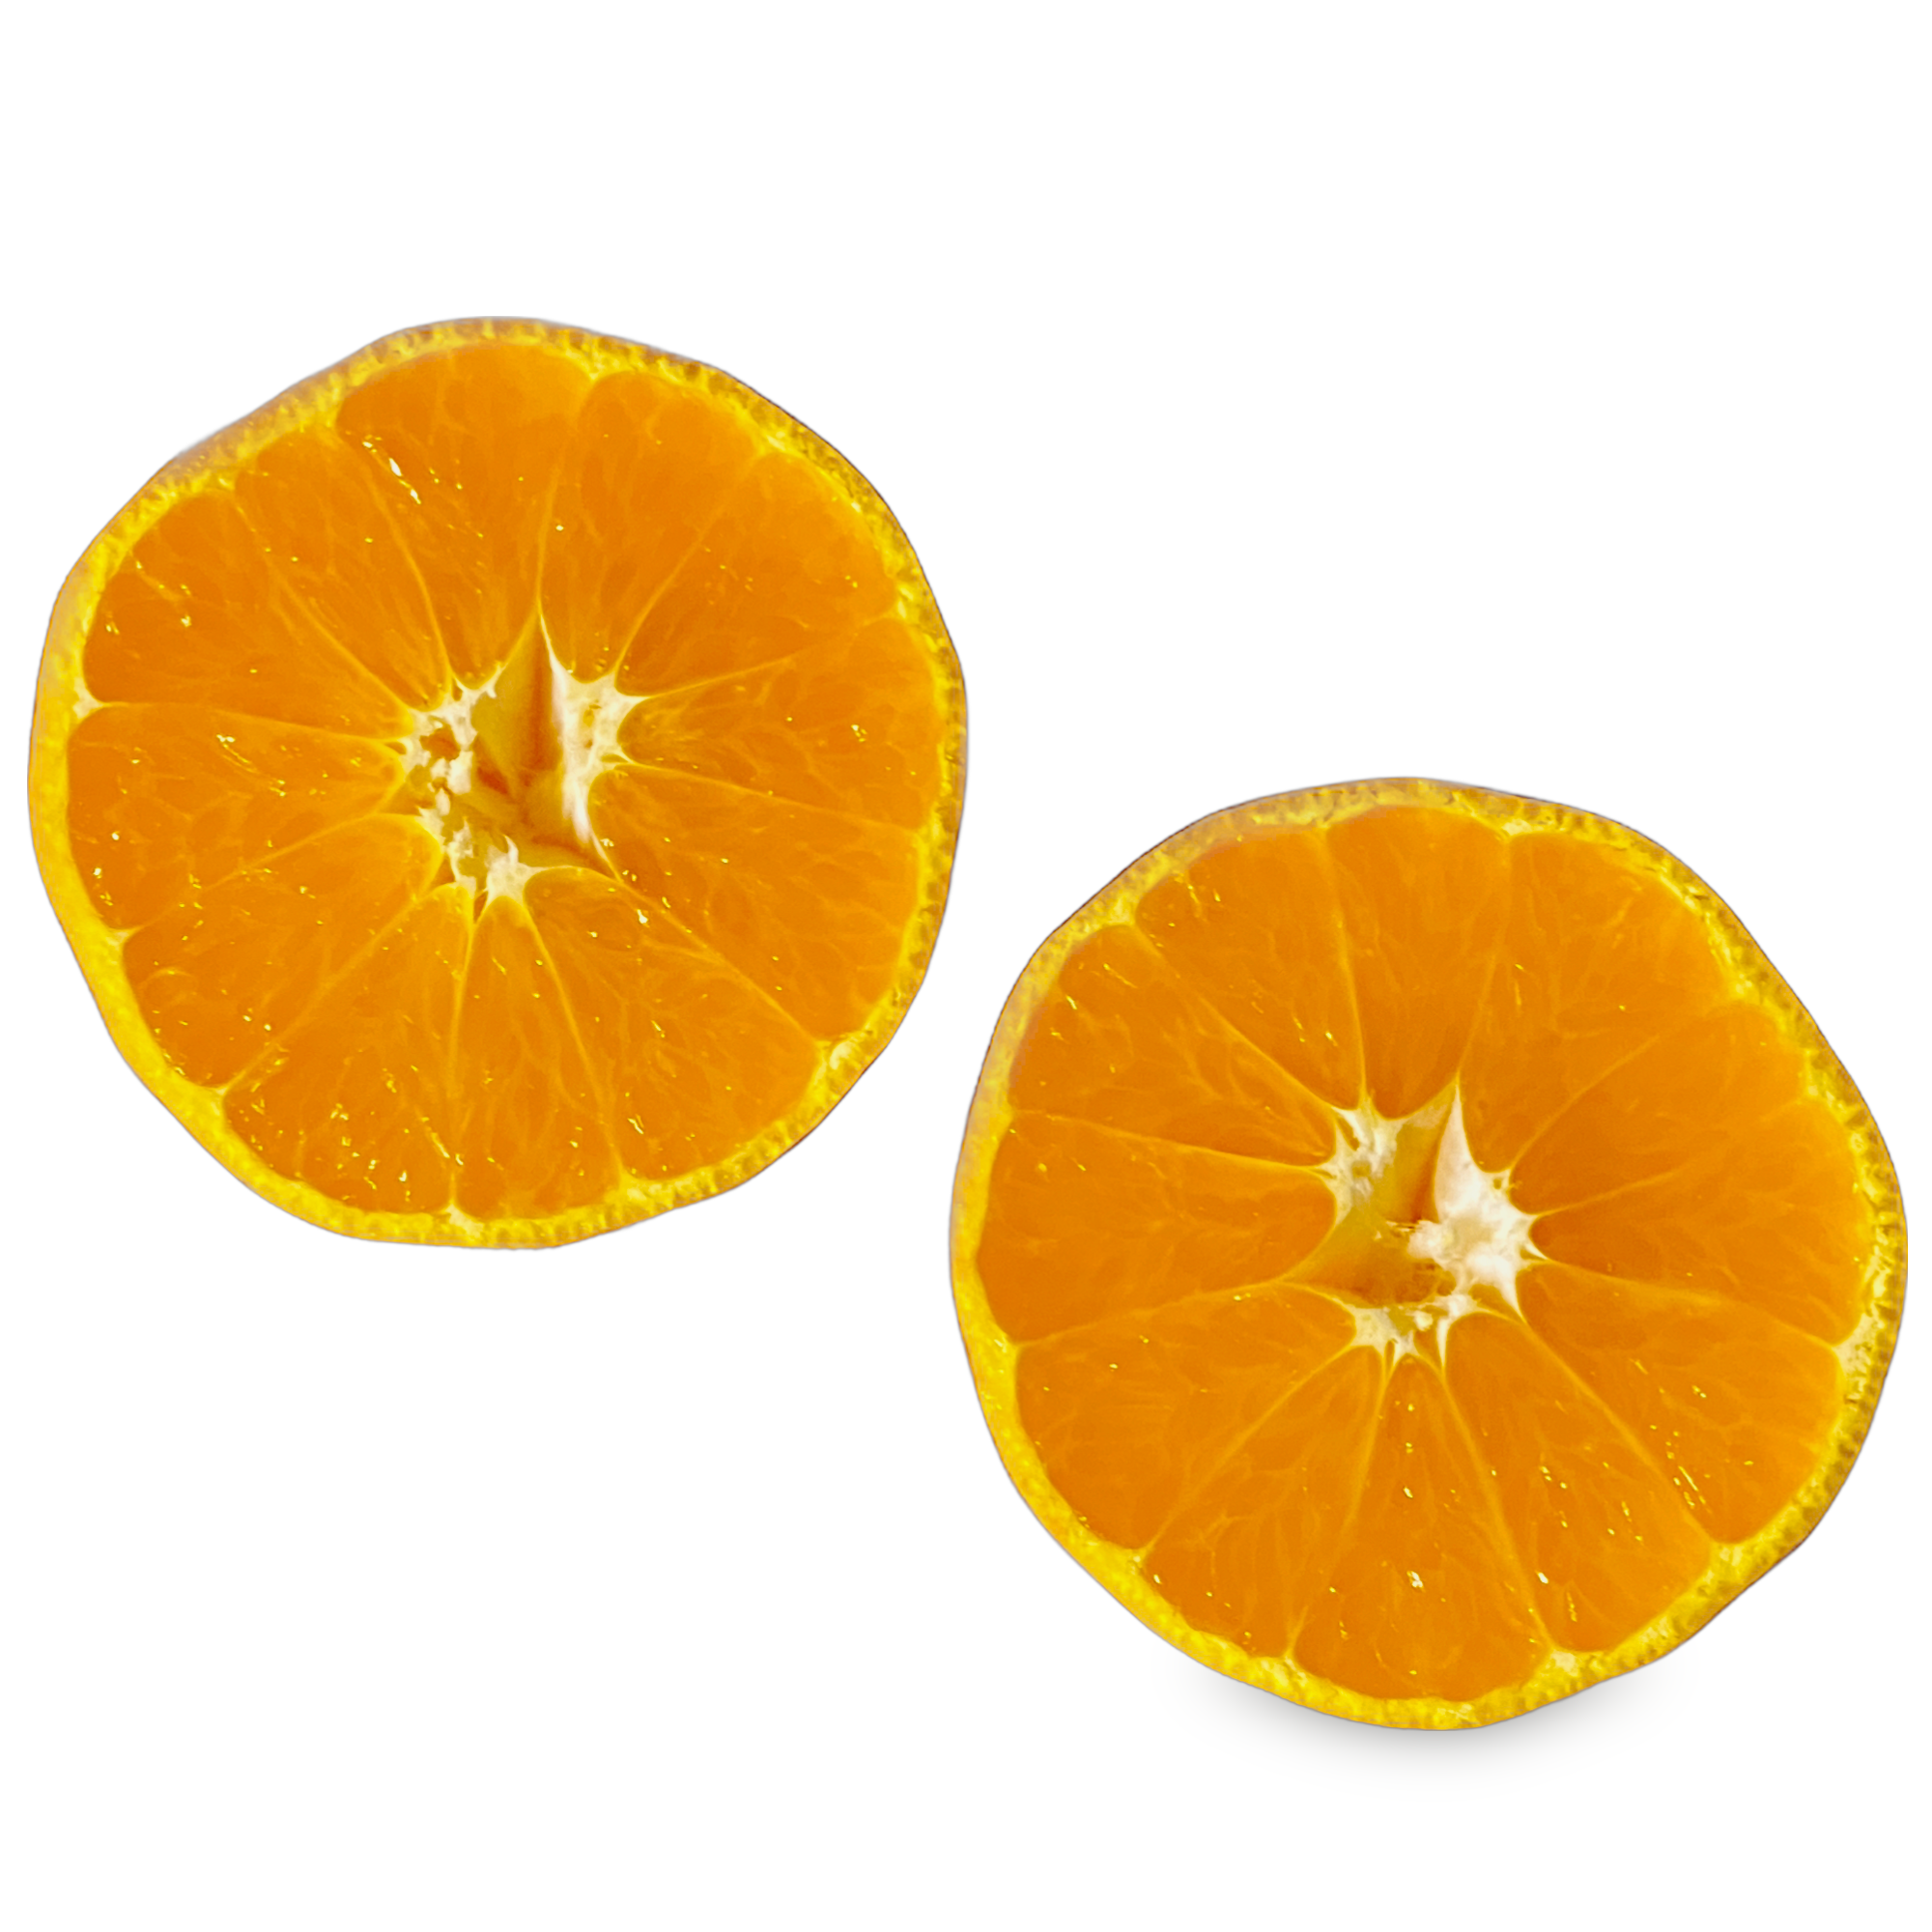 柑橘類のフィトケミカル